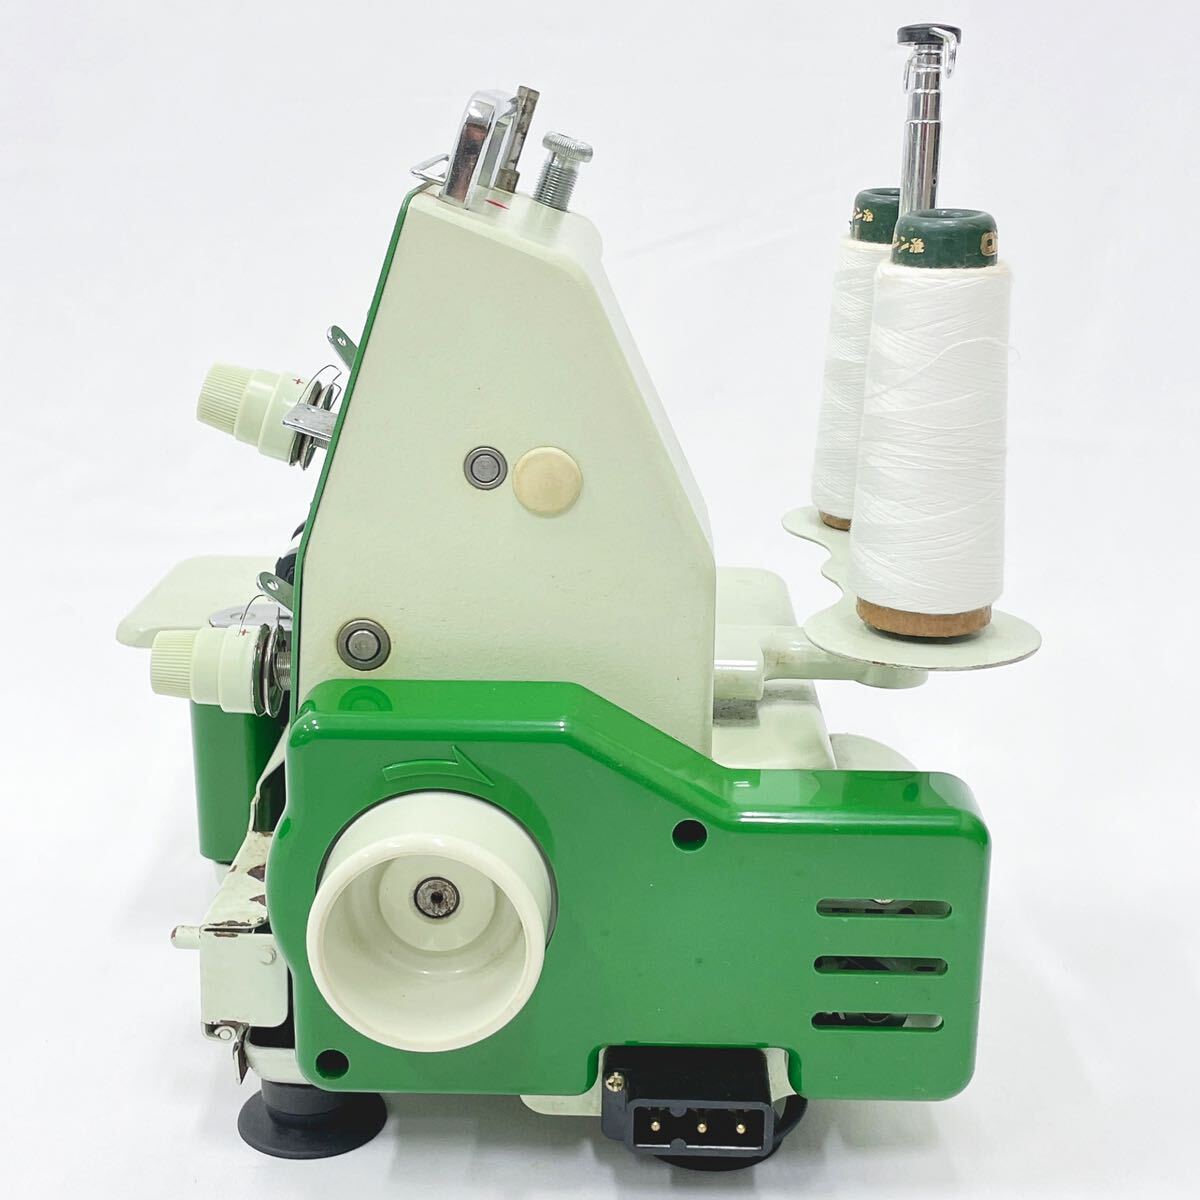  электризация подтверждено JUKI Juki baby lock baby блокировка EF-205S швейная машинка с оверлоком ручная работа рукоделие foot педаль имеется R.04100